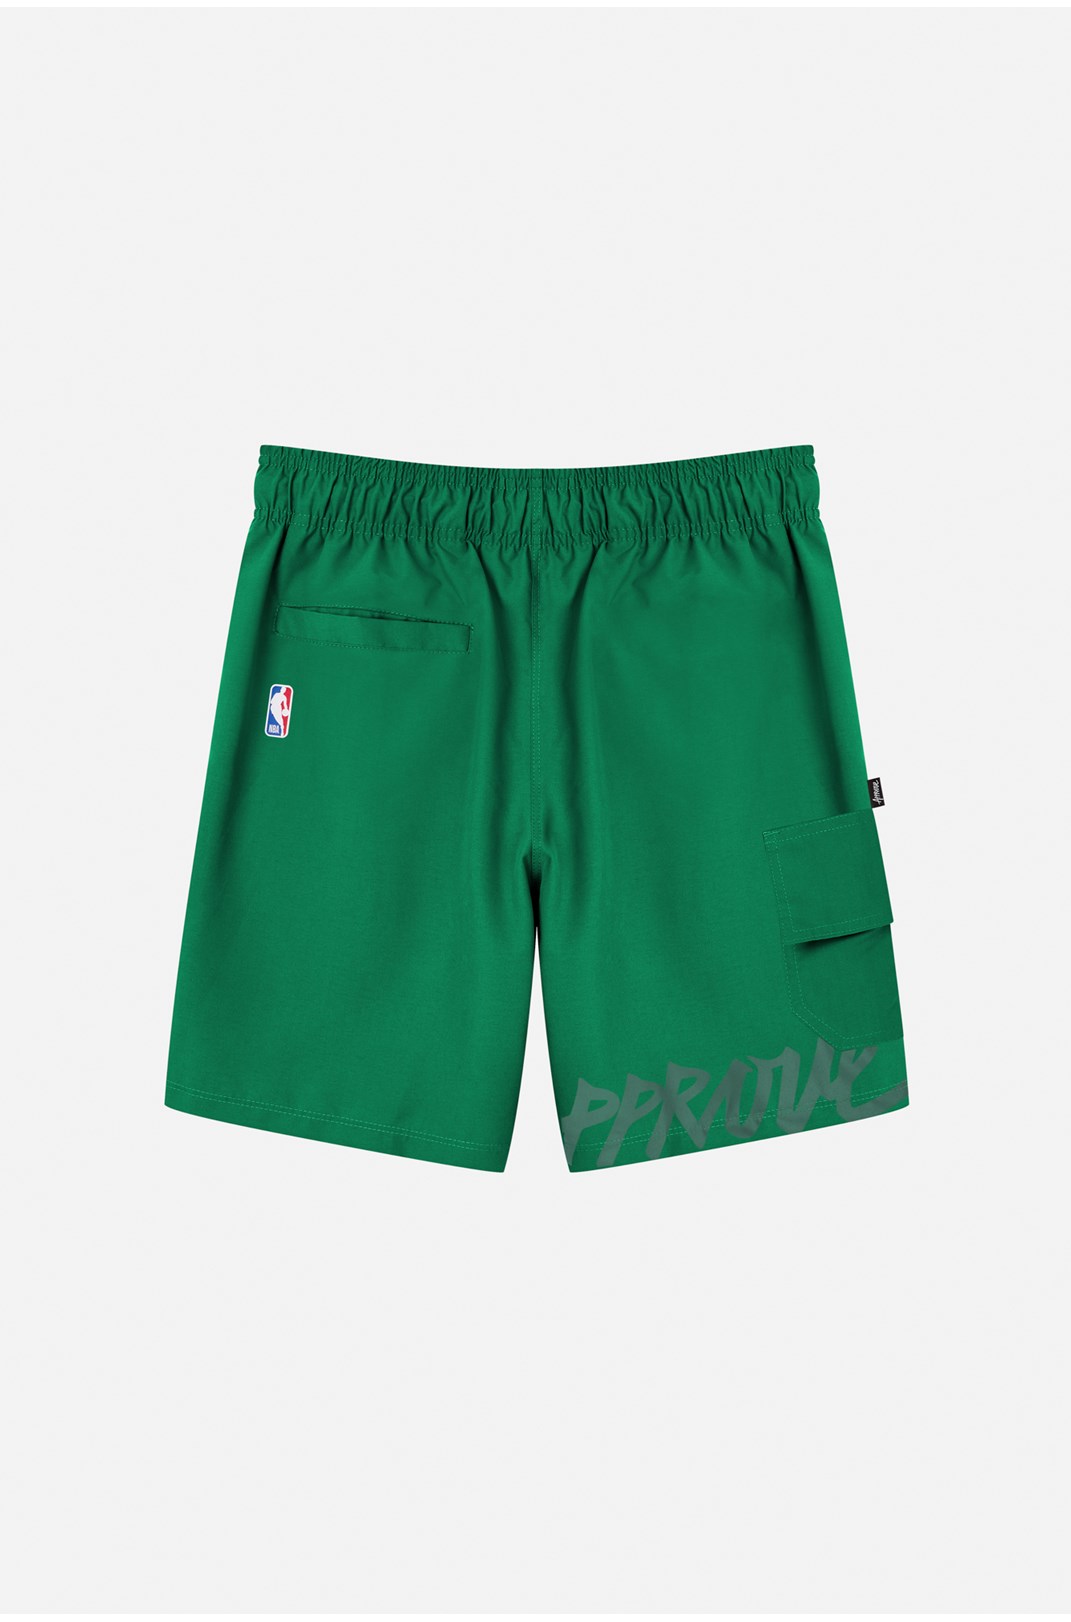 Shorts Approve X Nba Celtics Verde